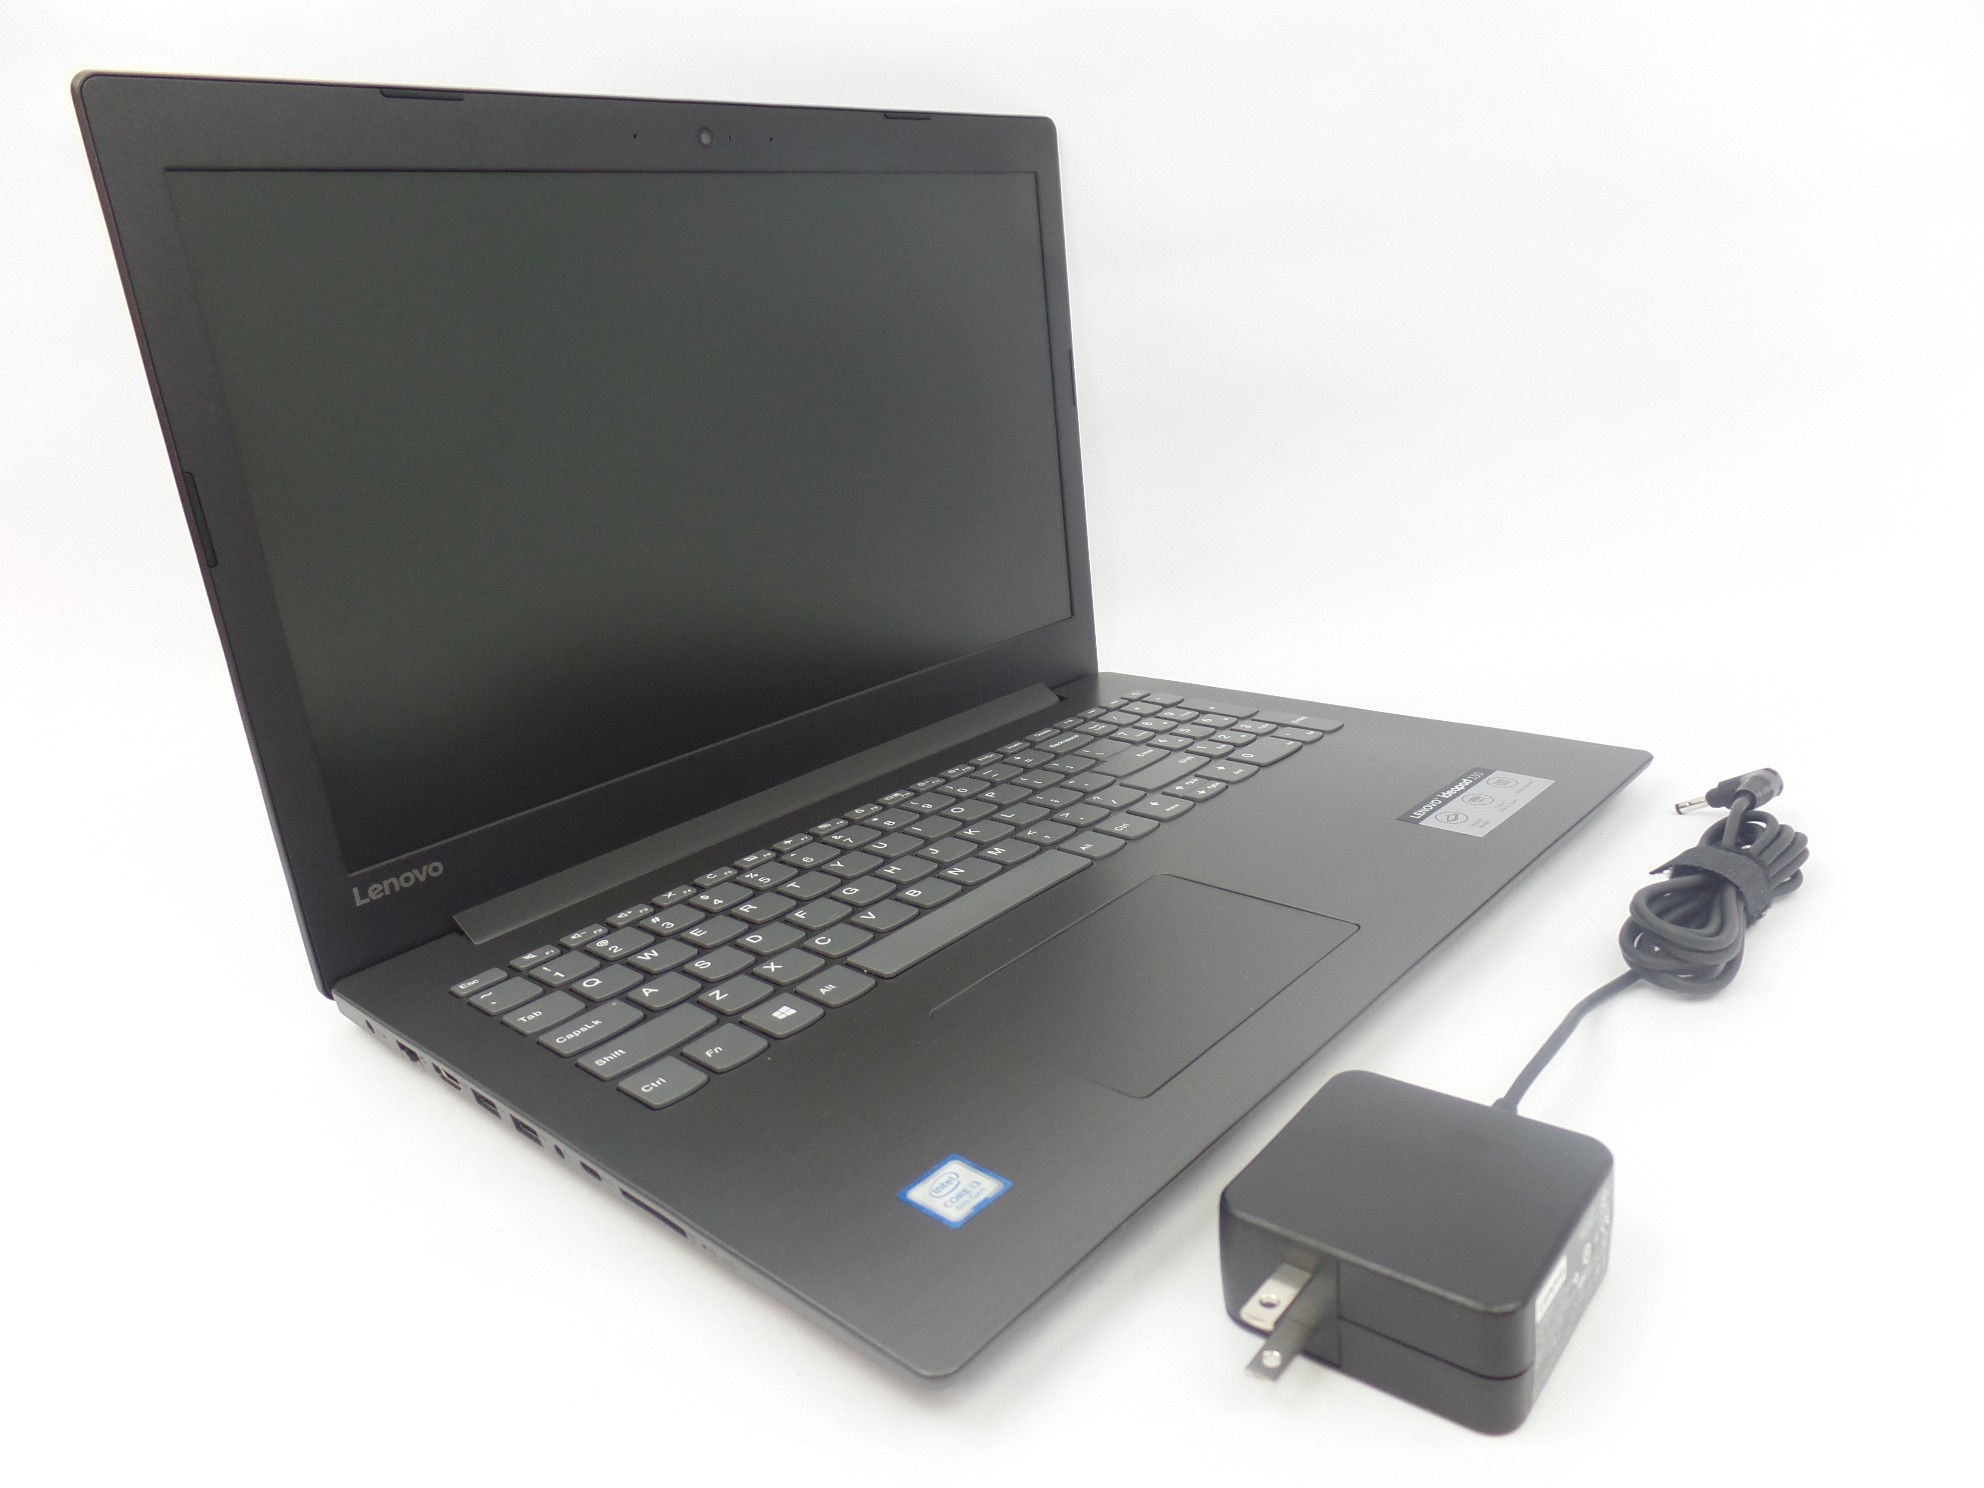 Lenovo Ideapad 330-15IKB 15.6" HD i3-8130U 2.2GHz 8GB 1TB W10H 81DE017BUS Laptop